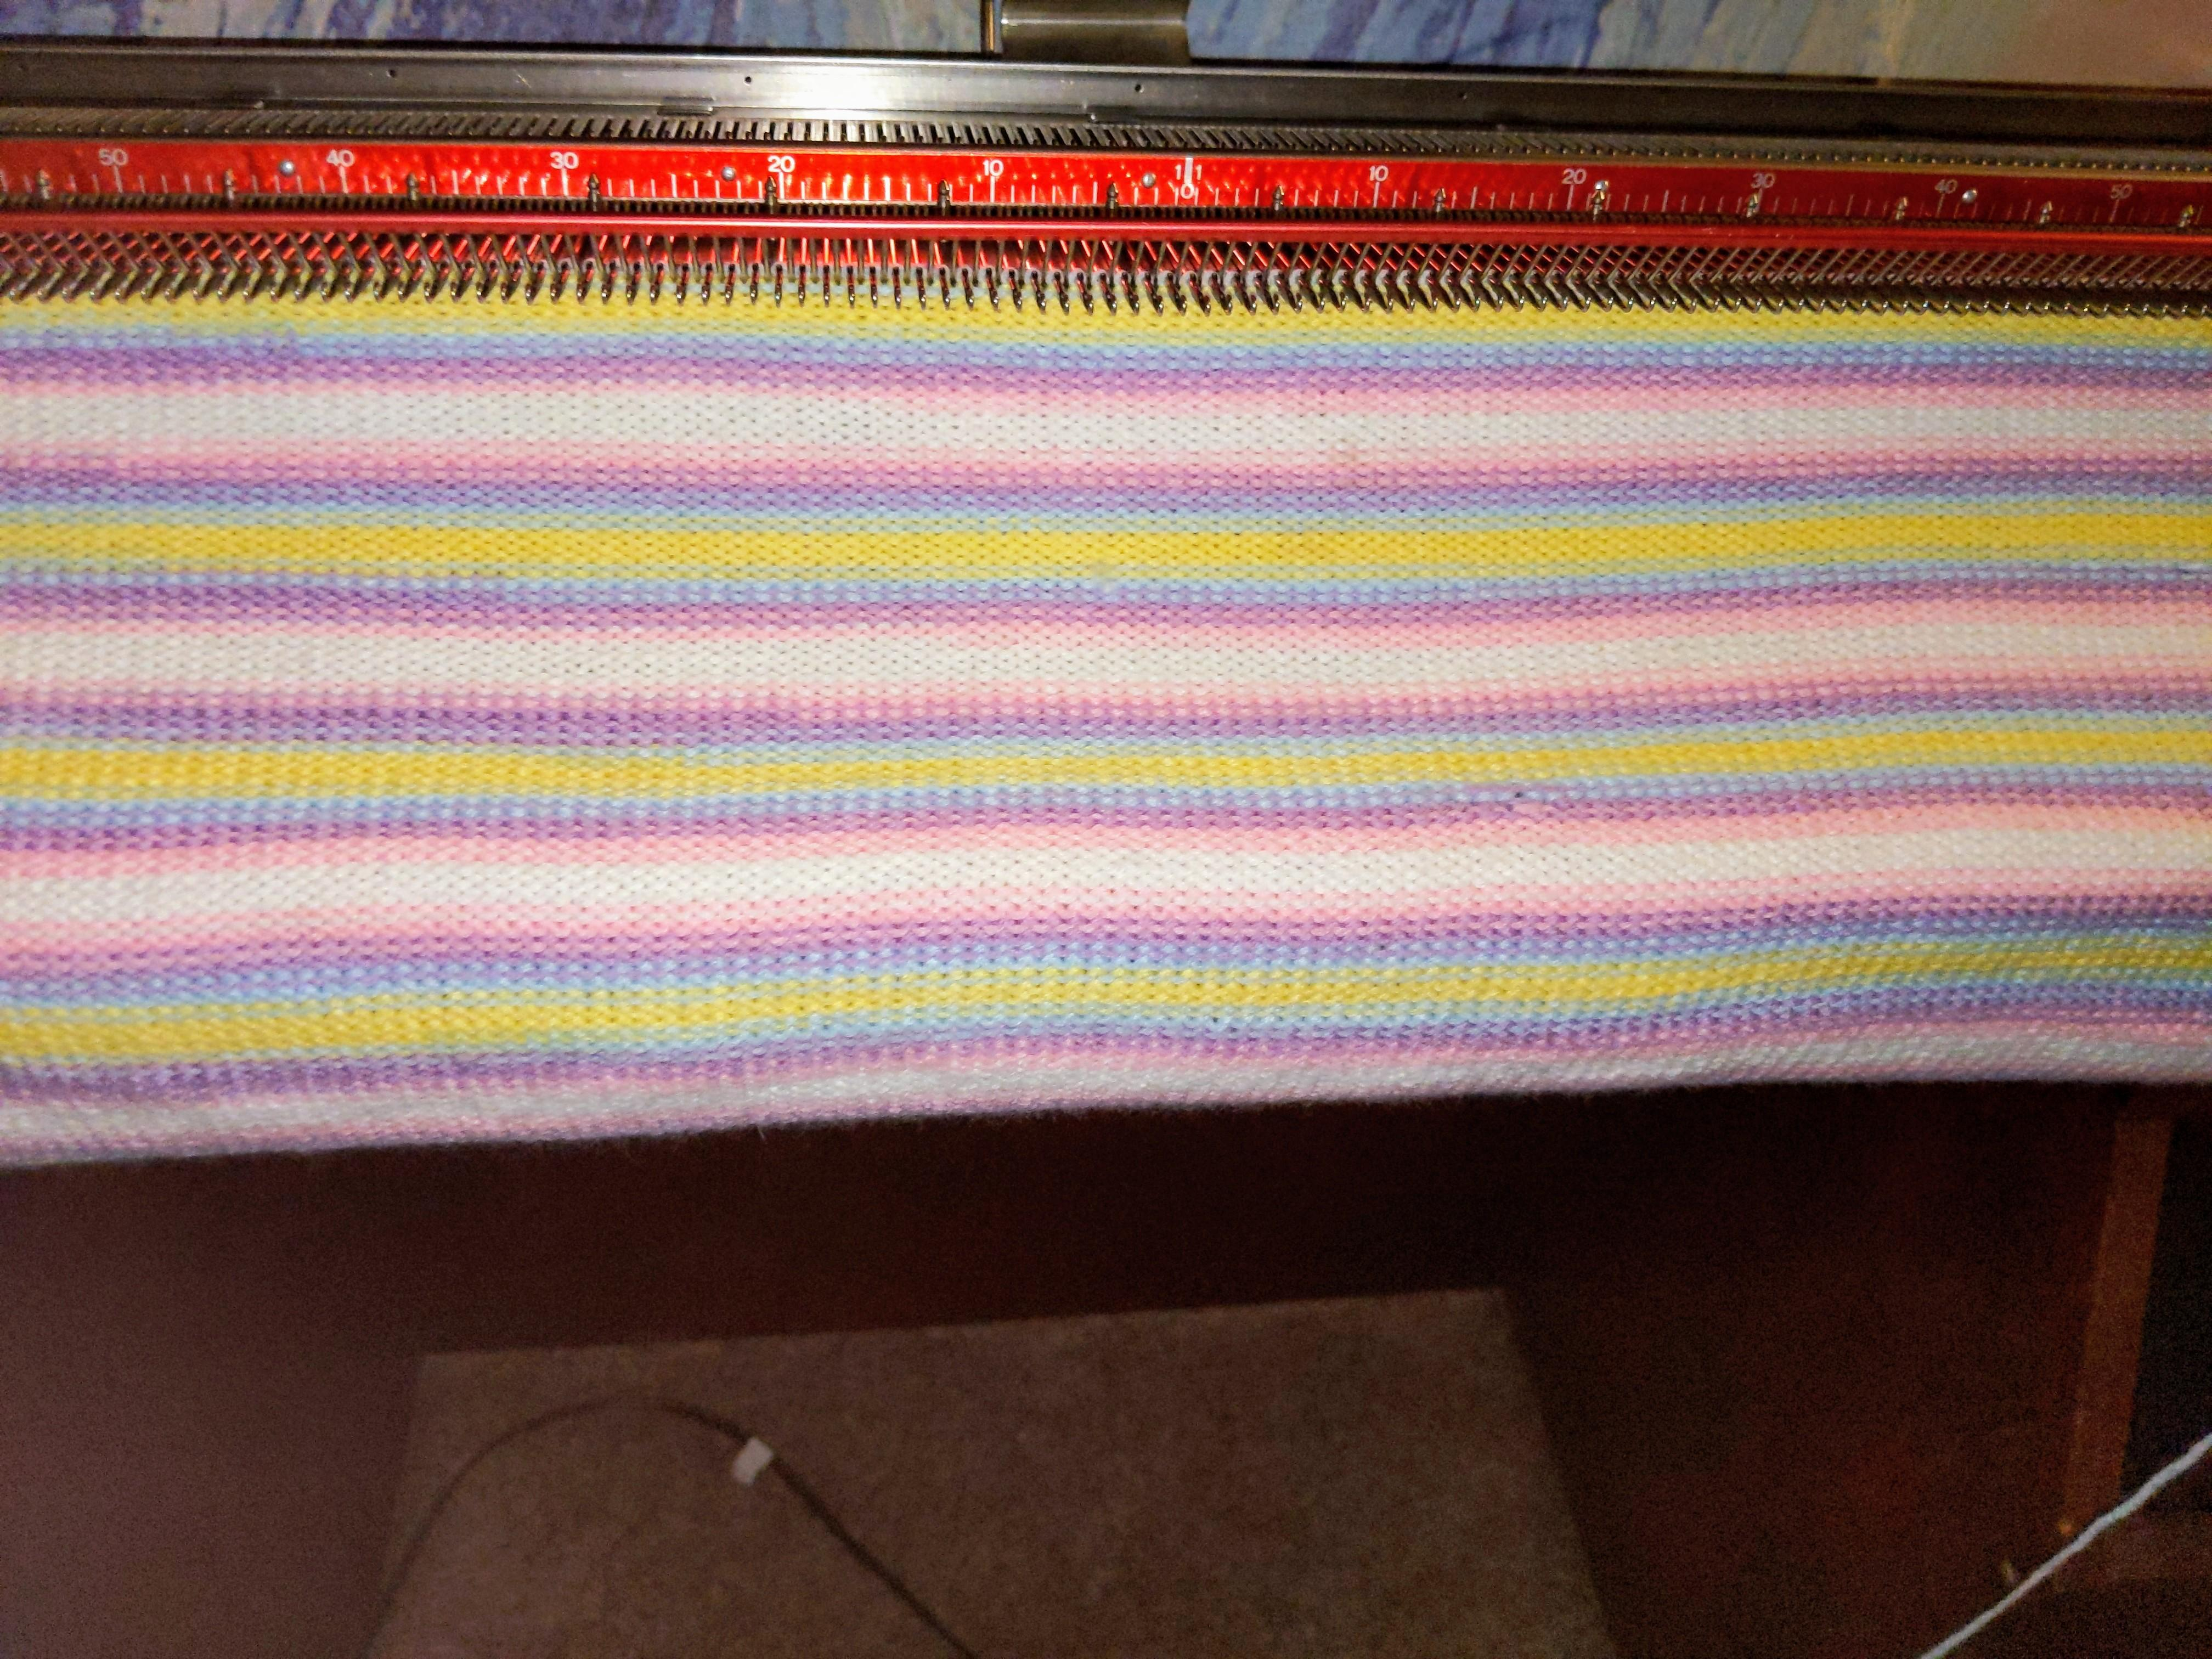 Passap Knitting Machine Patterns My First Passap Speed O Knit Project Machineknitting